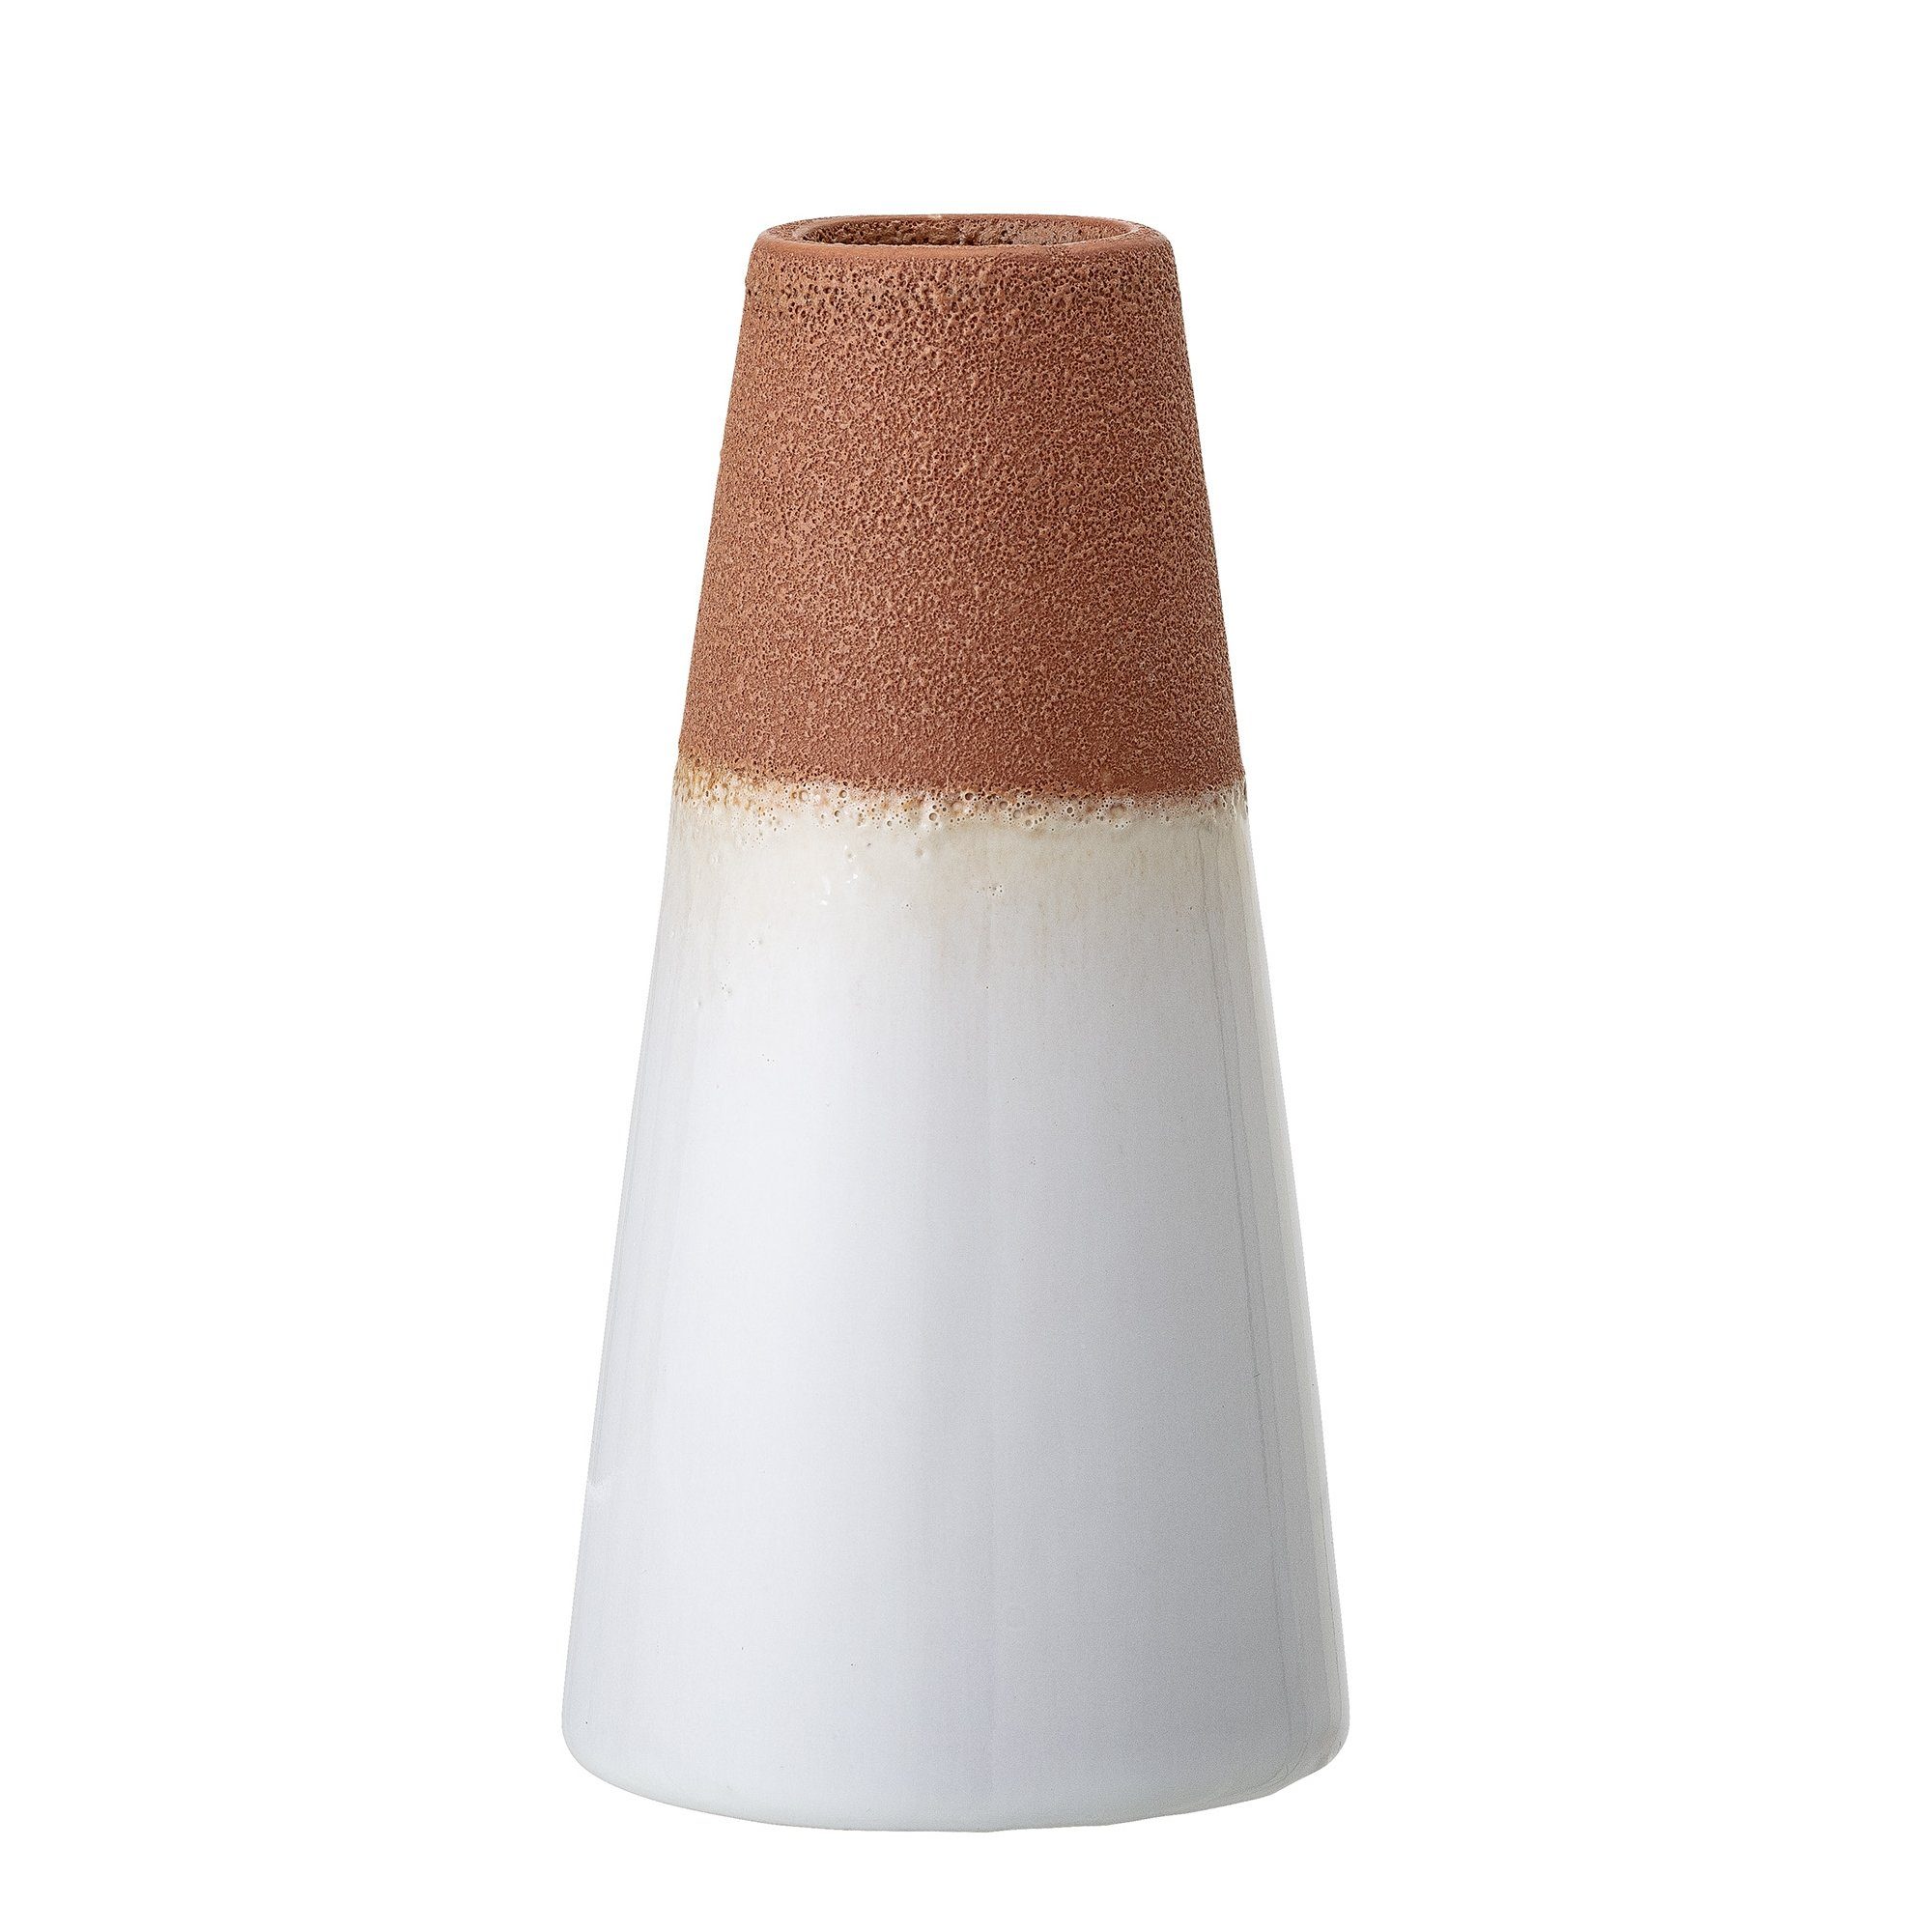 Bloomingville Dekovase Bloomingville Vase weiß/braun H15 cm